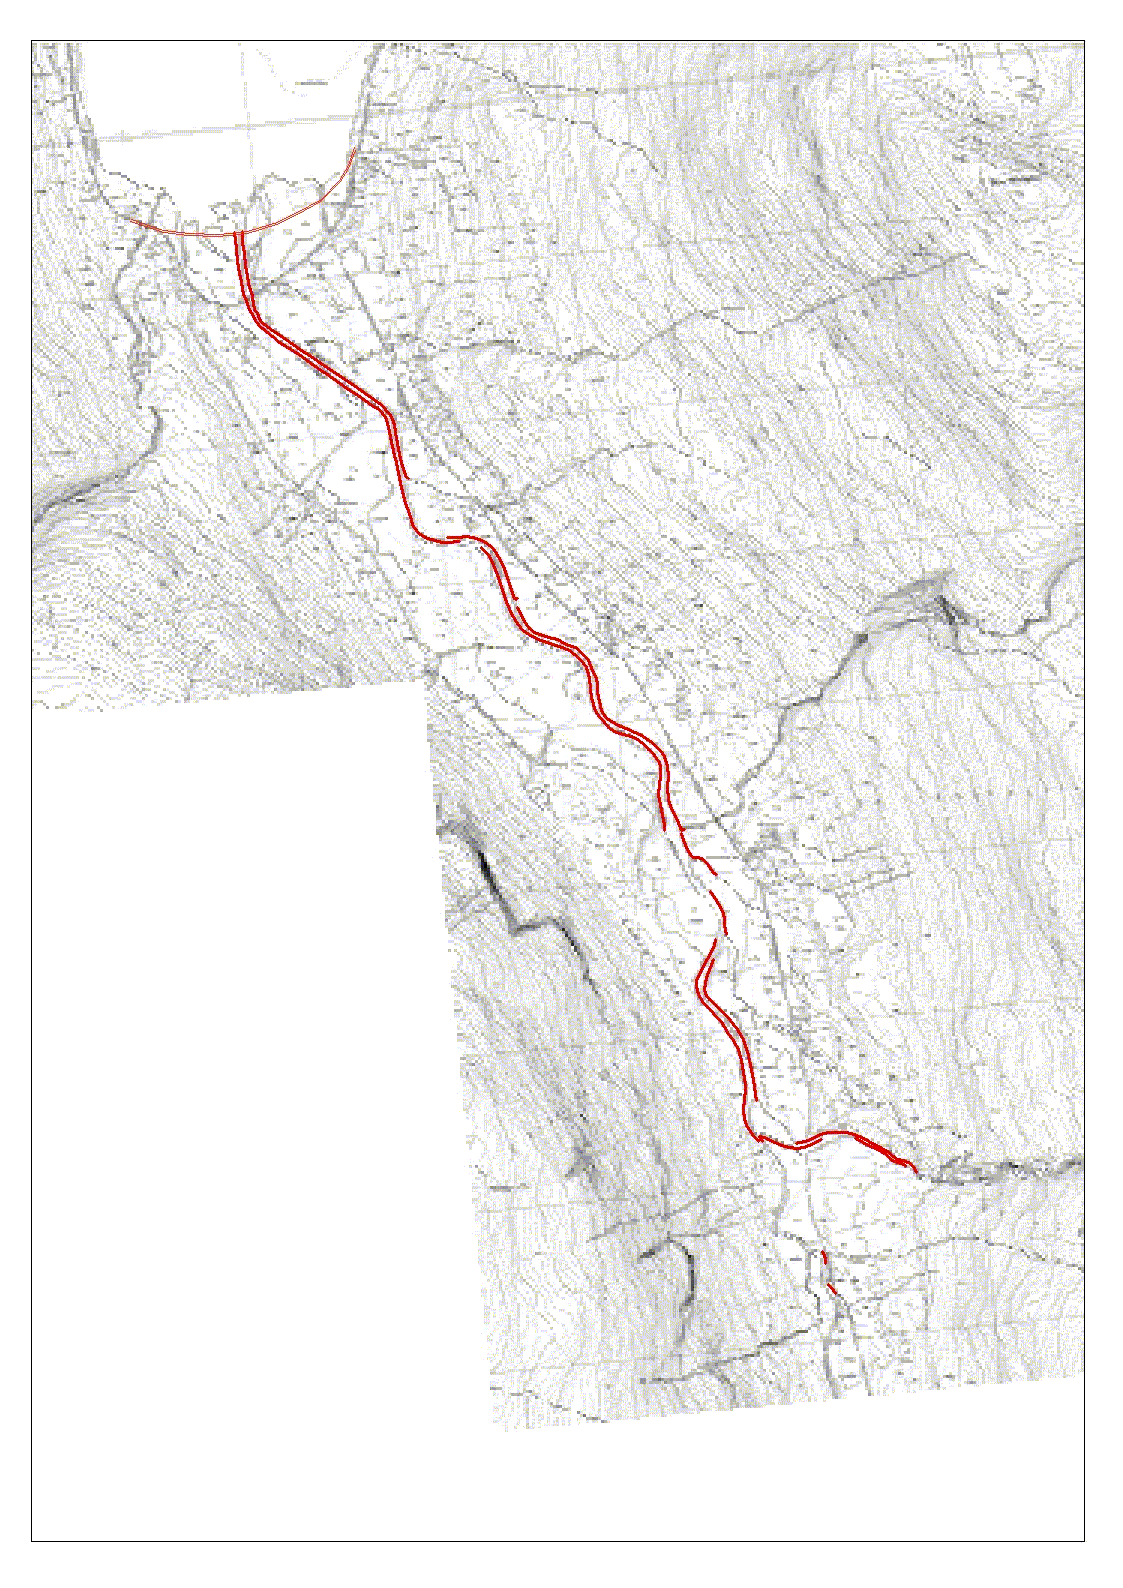 I perioden frem til 90-tallet er Bognelva som følge av dette kanalisert over en strekning på ca 3,5 km fra ny E6 og opp til Øverplasselva.